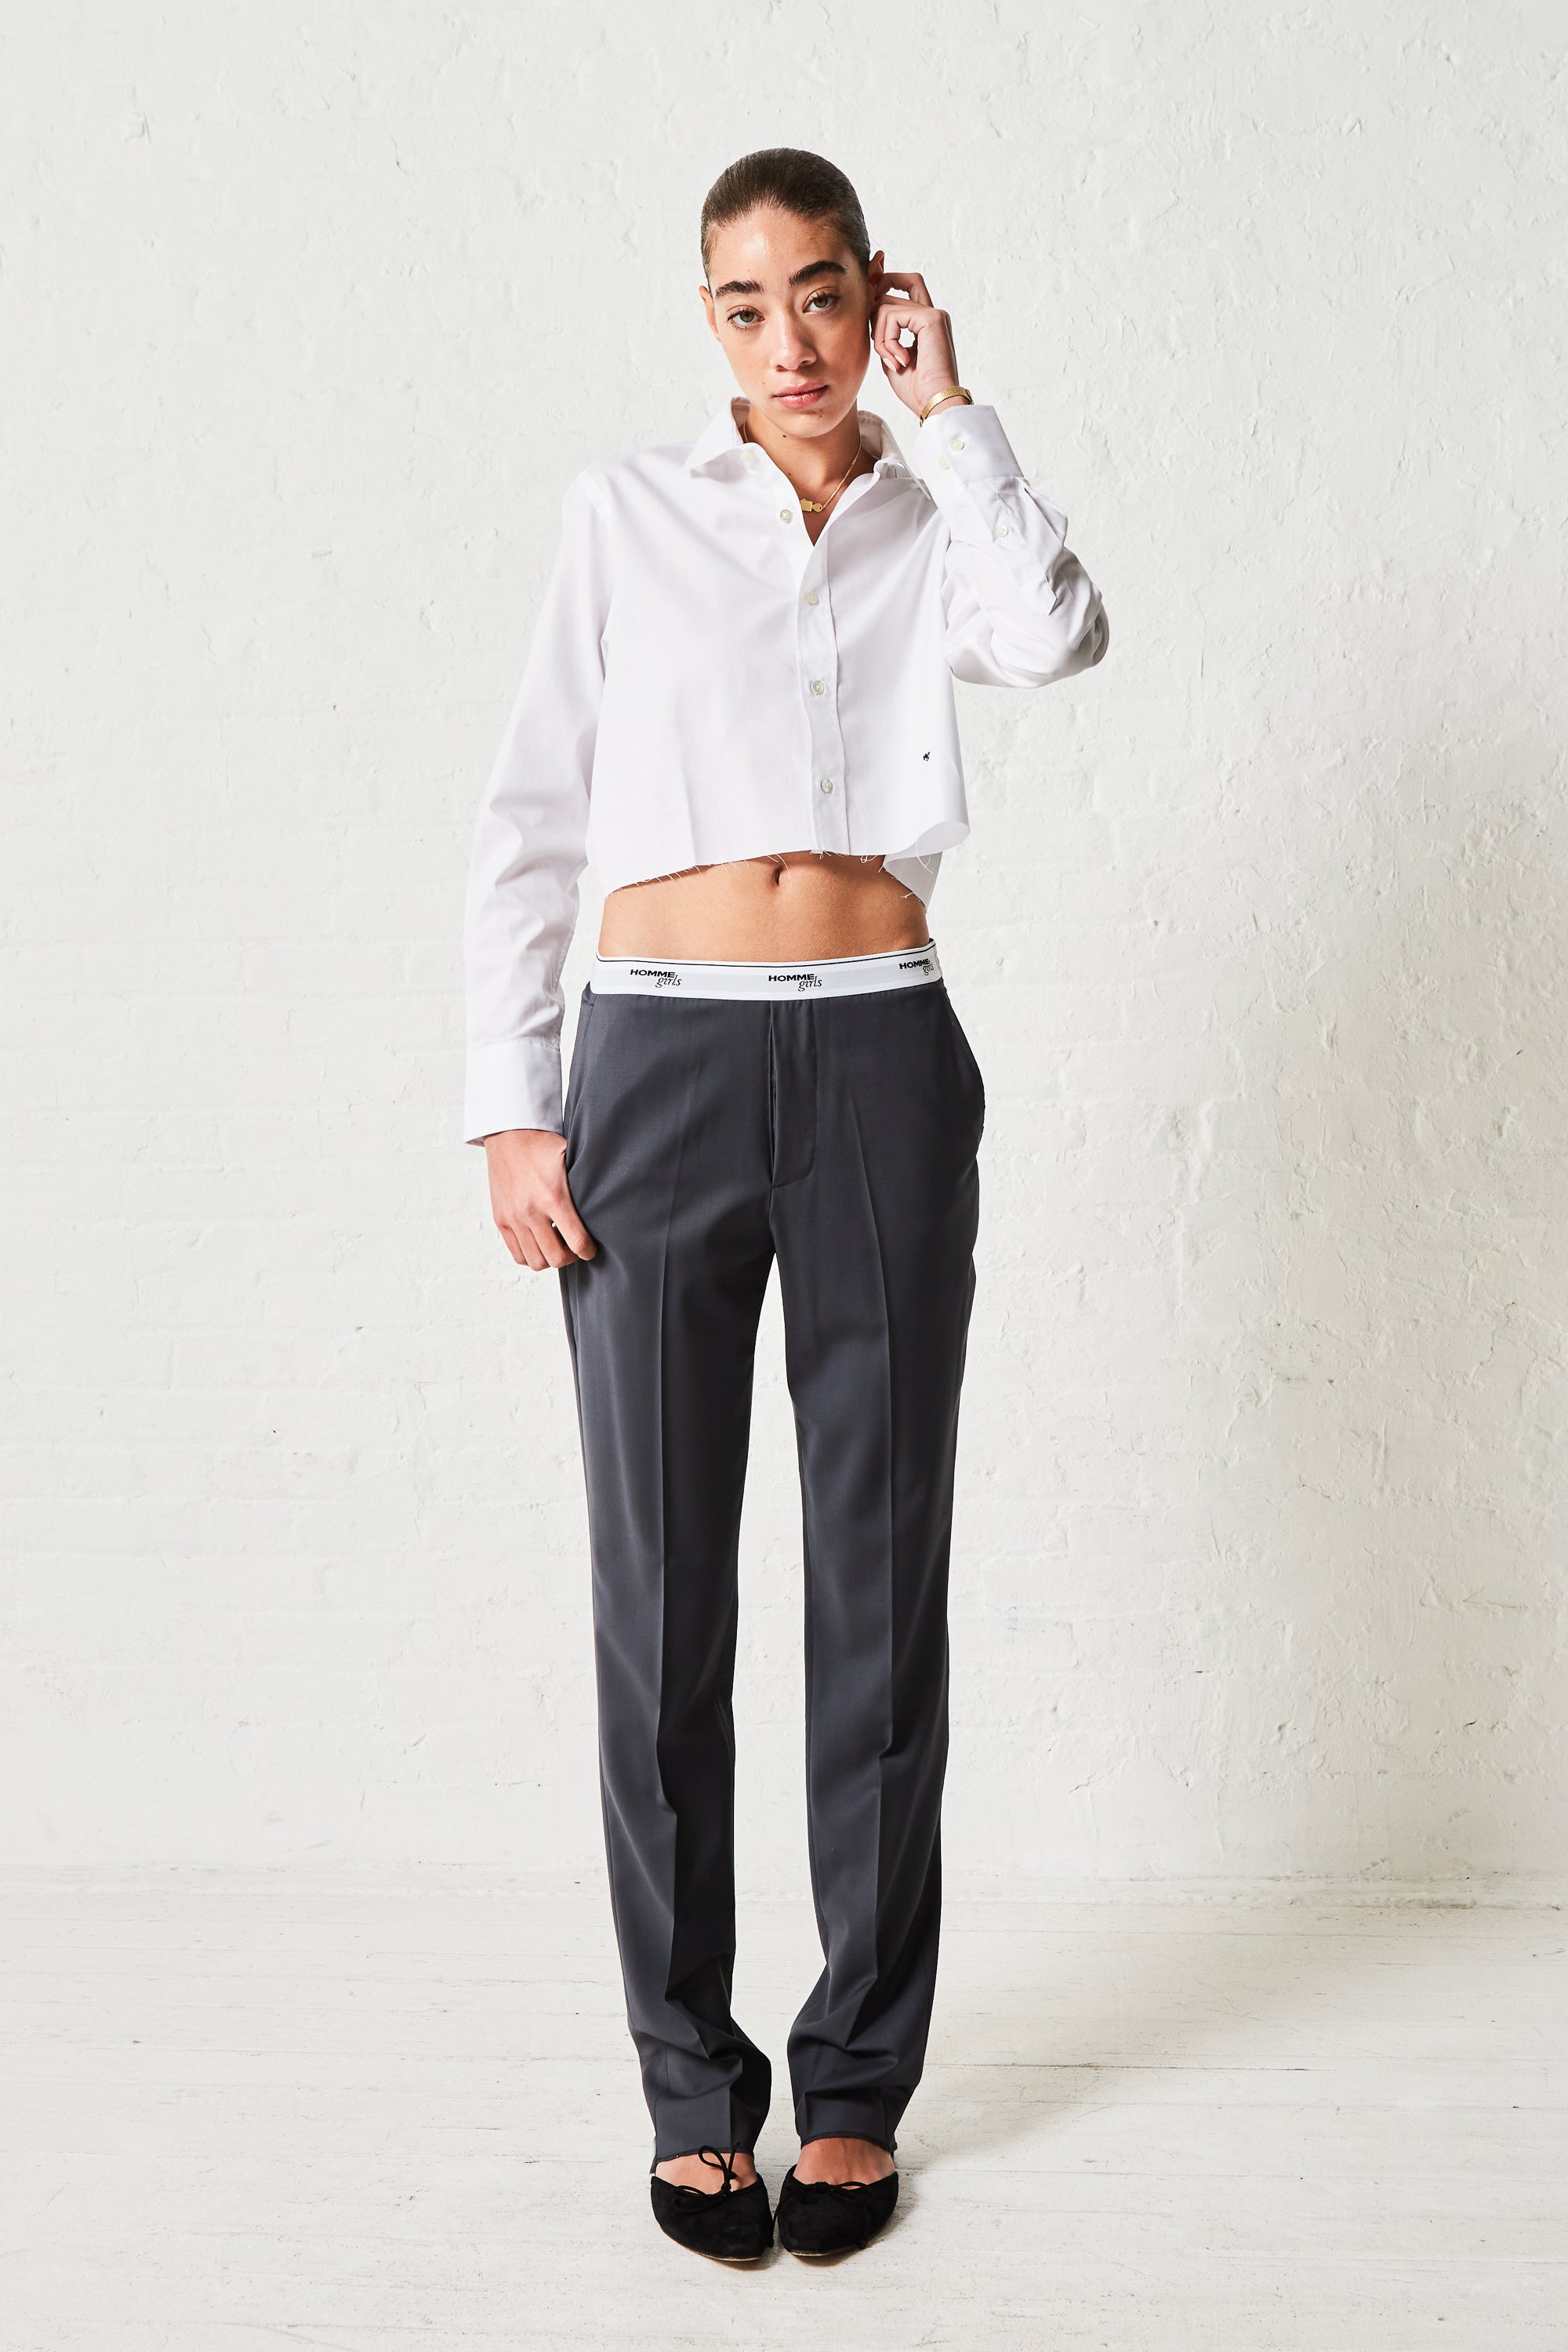 16 Black Blazer Grey Pants Styles For Men - The Versatile Man | Blazer  outfits men, Black shirt outfits, White shirt grey pants